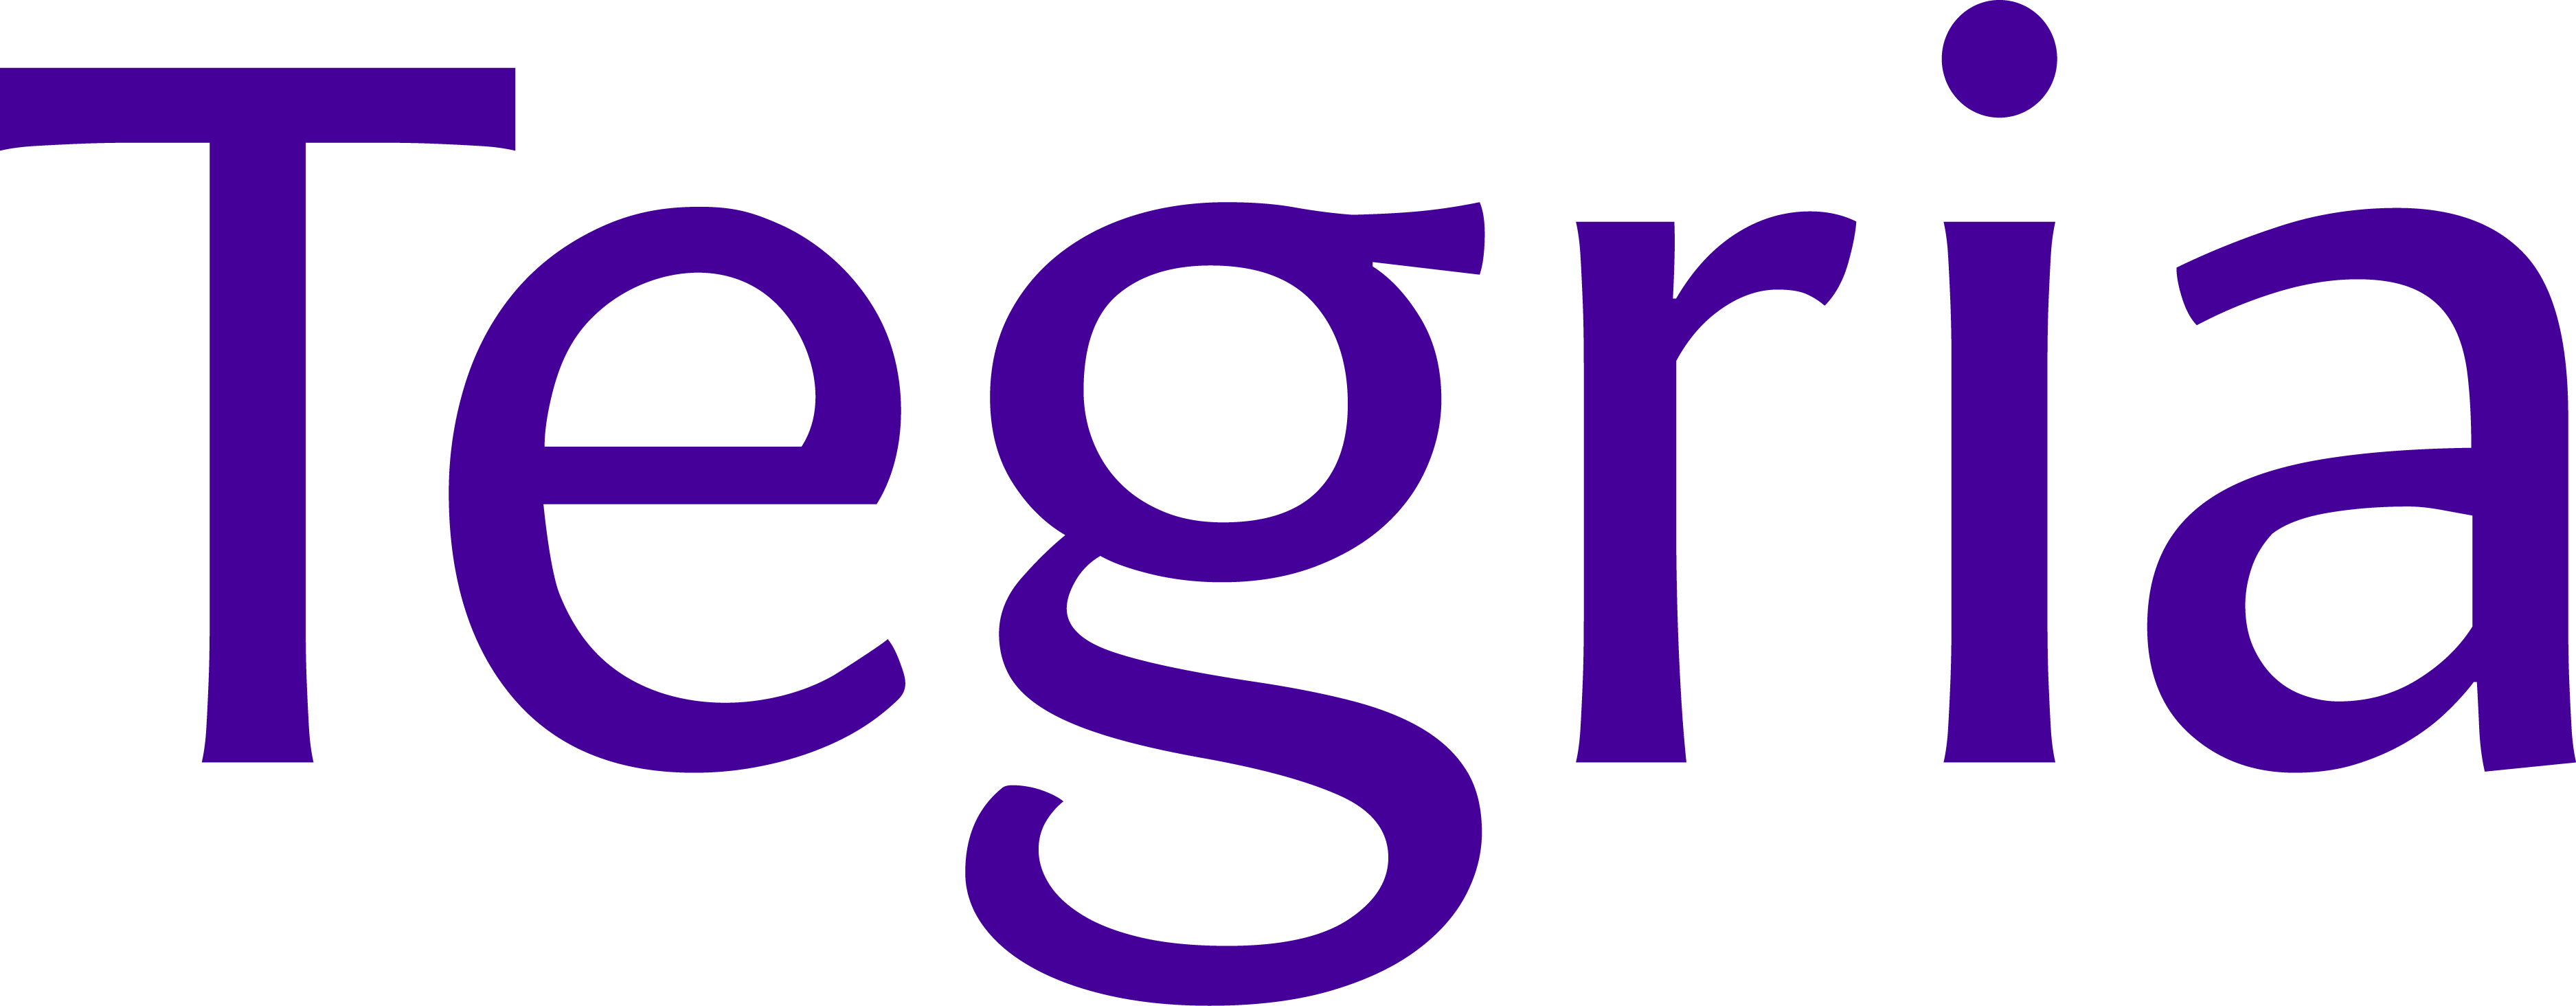 Tegria Logo